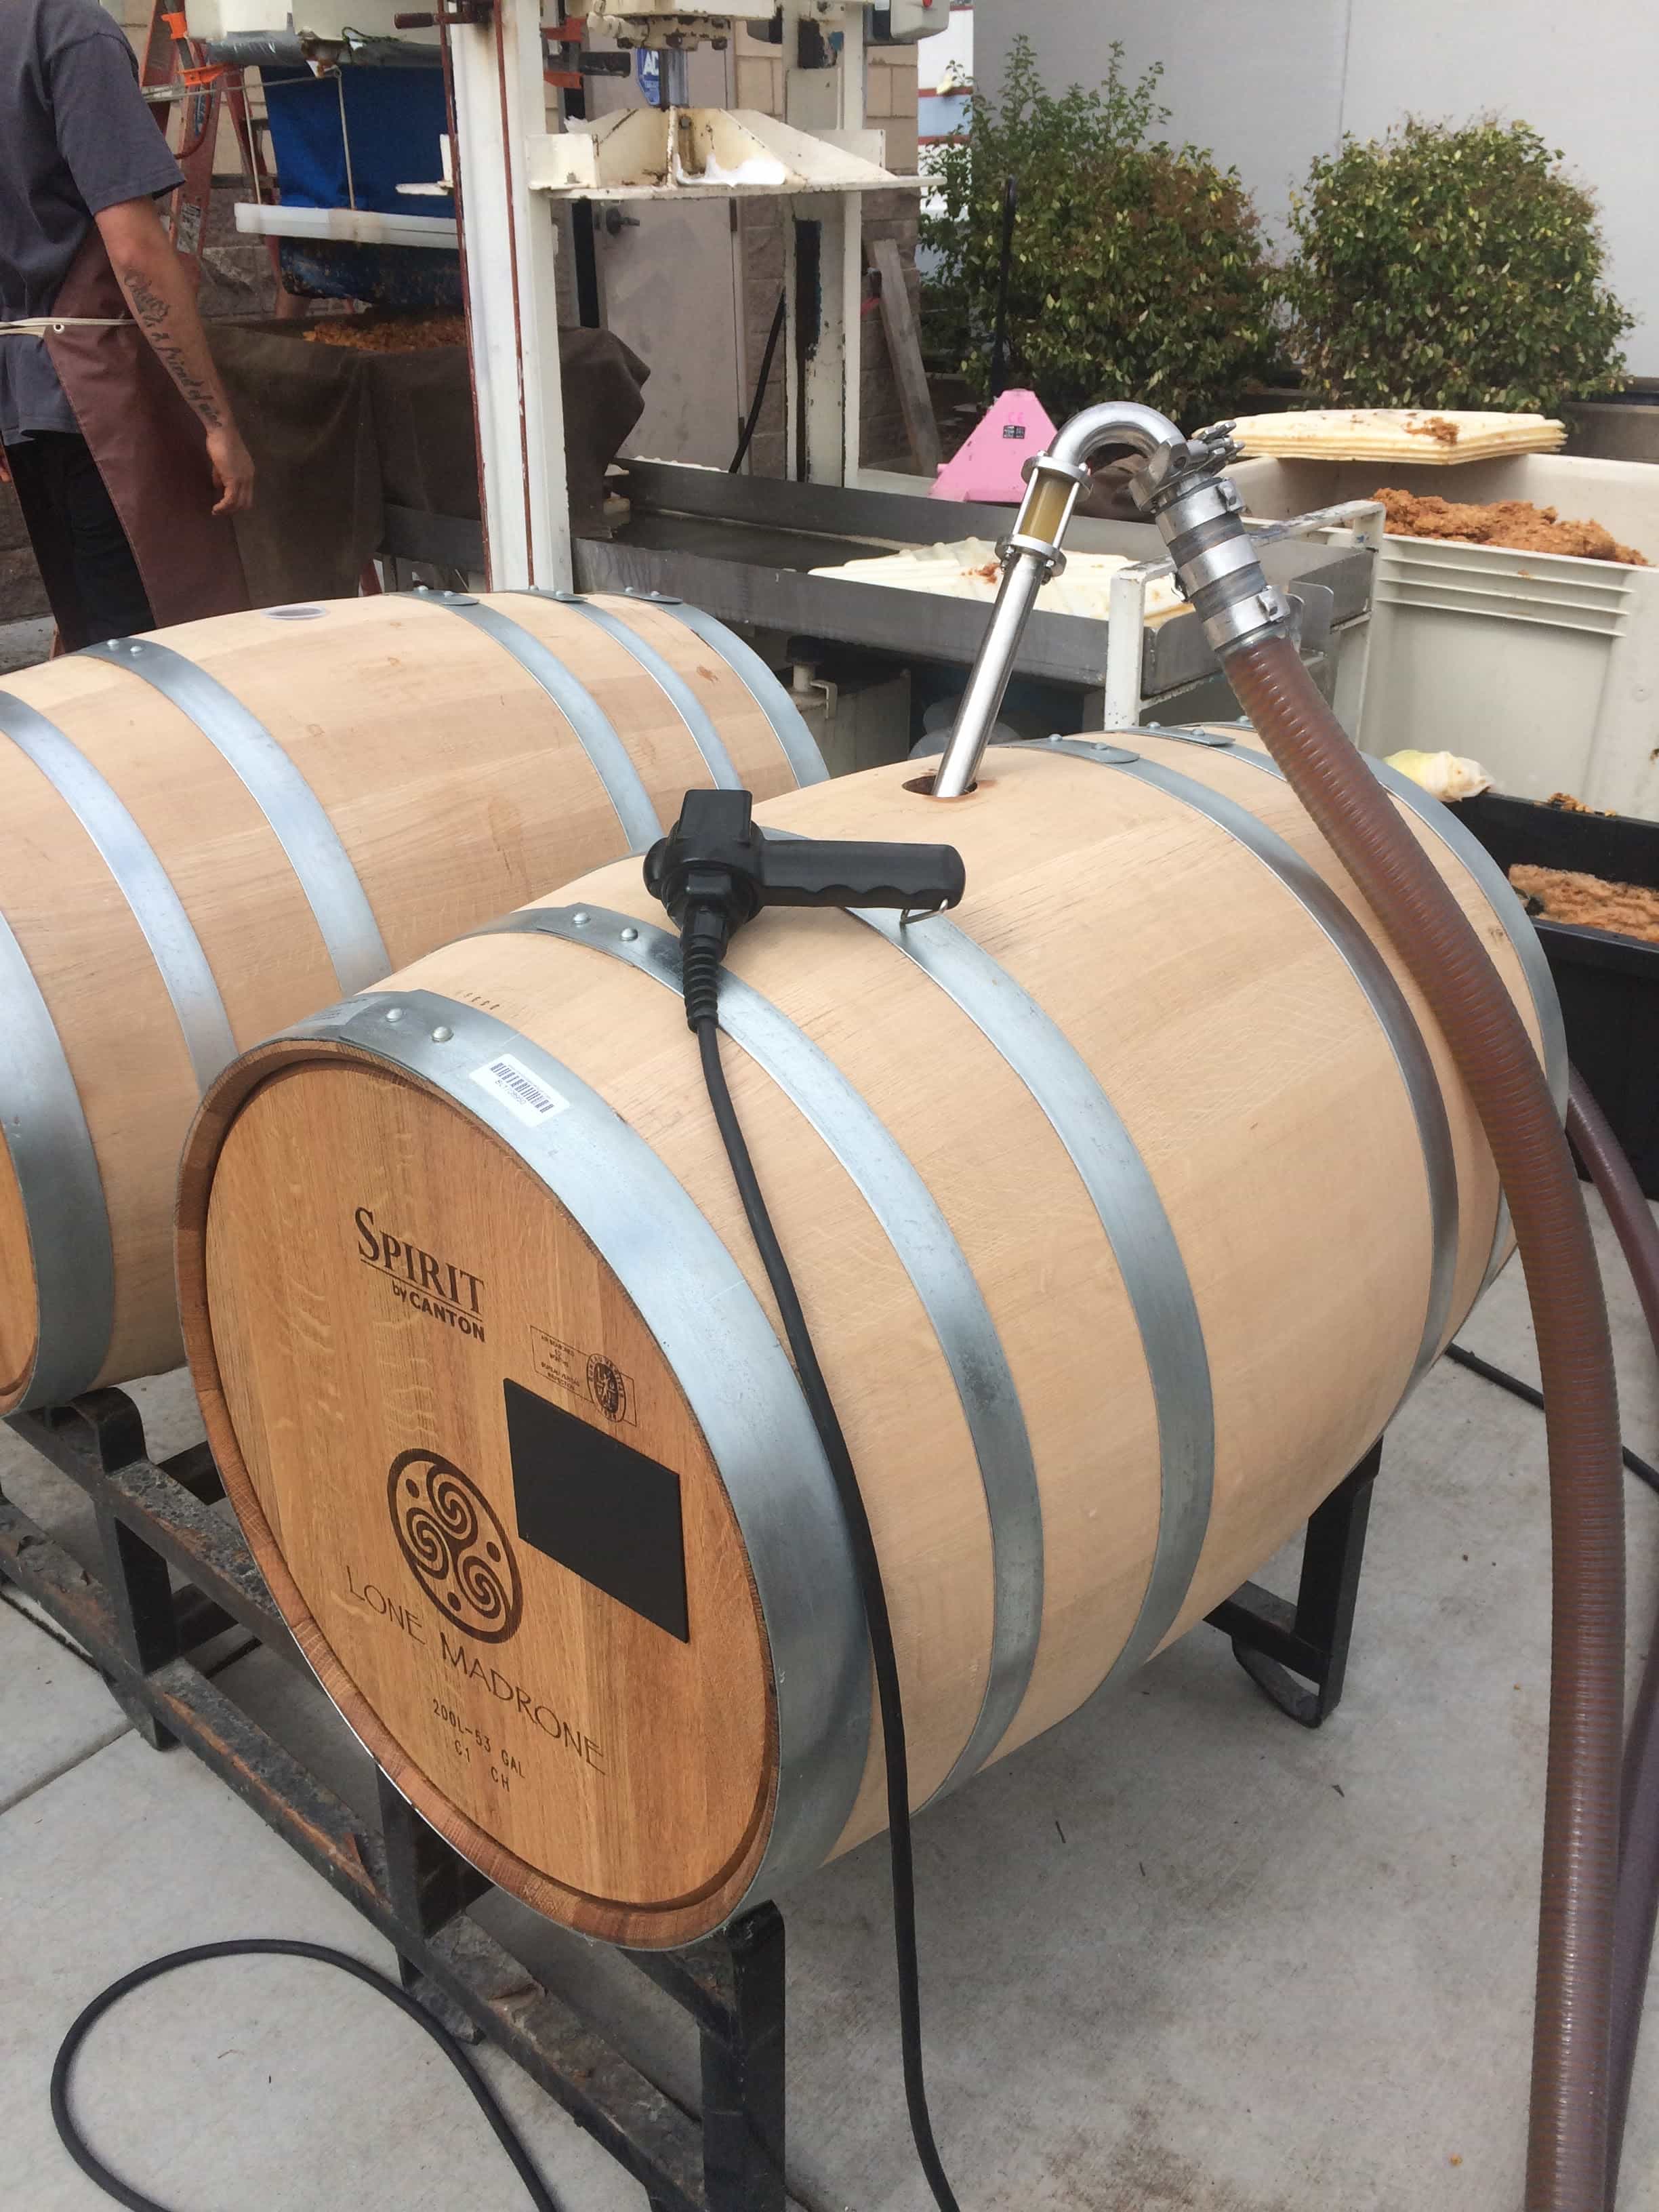 cider pumped into barrels photo